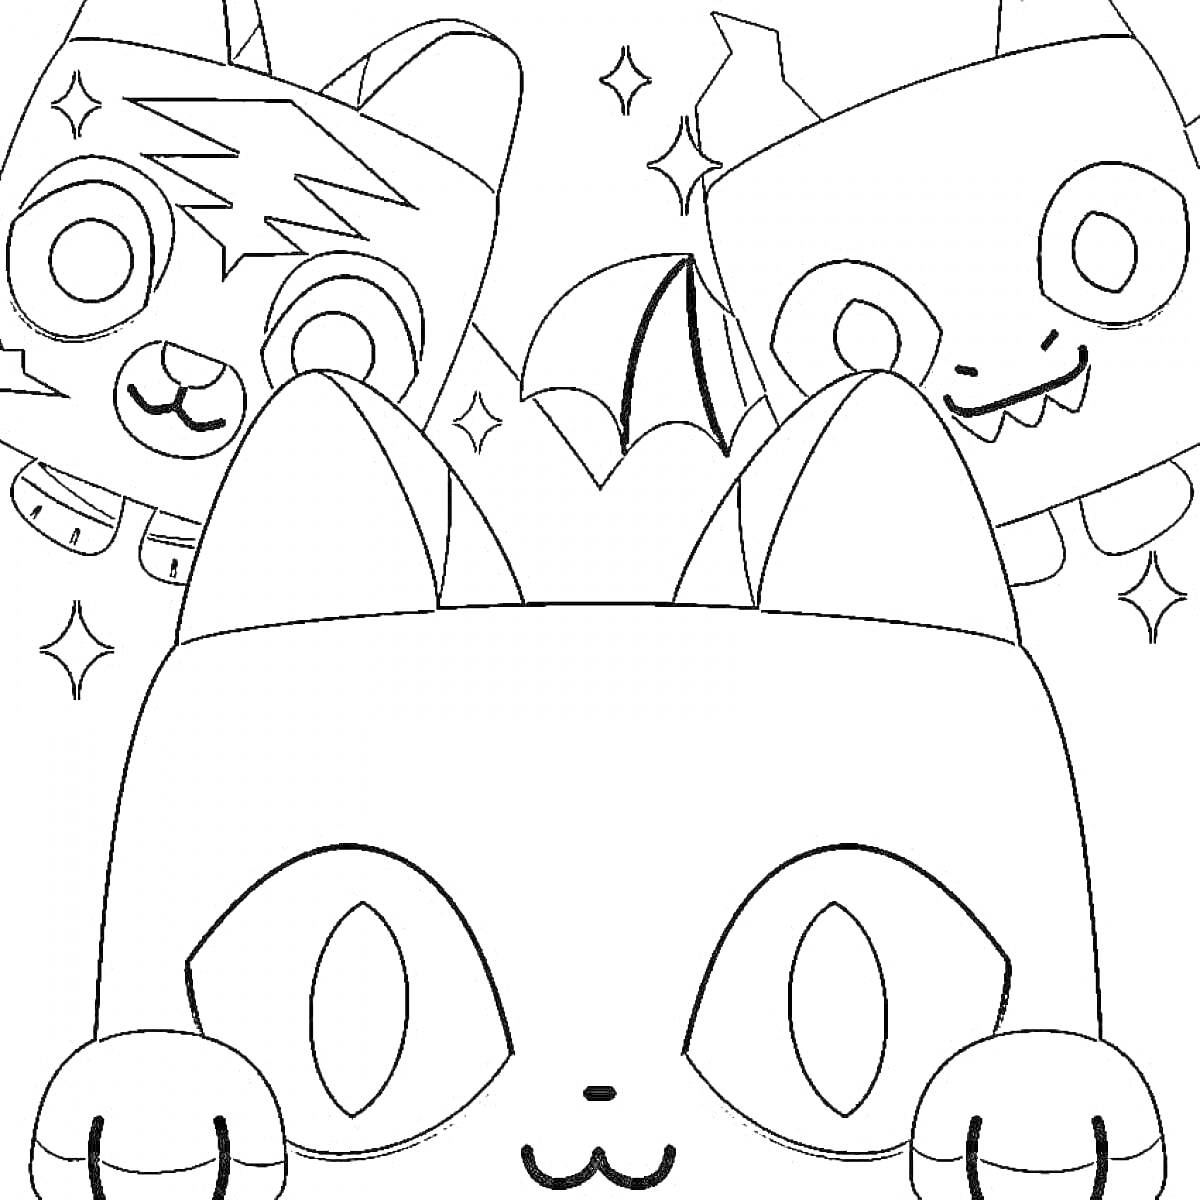 Раскраска Три радужных друга-монстра с большими глазами и ушами, один с короной. Фон украшают маленькие звездочки.